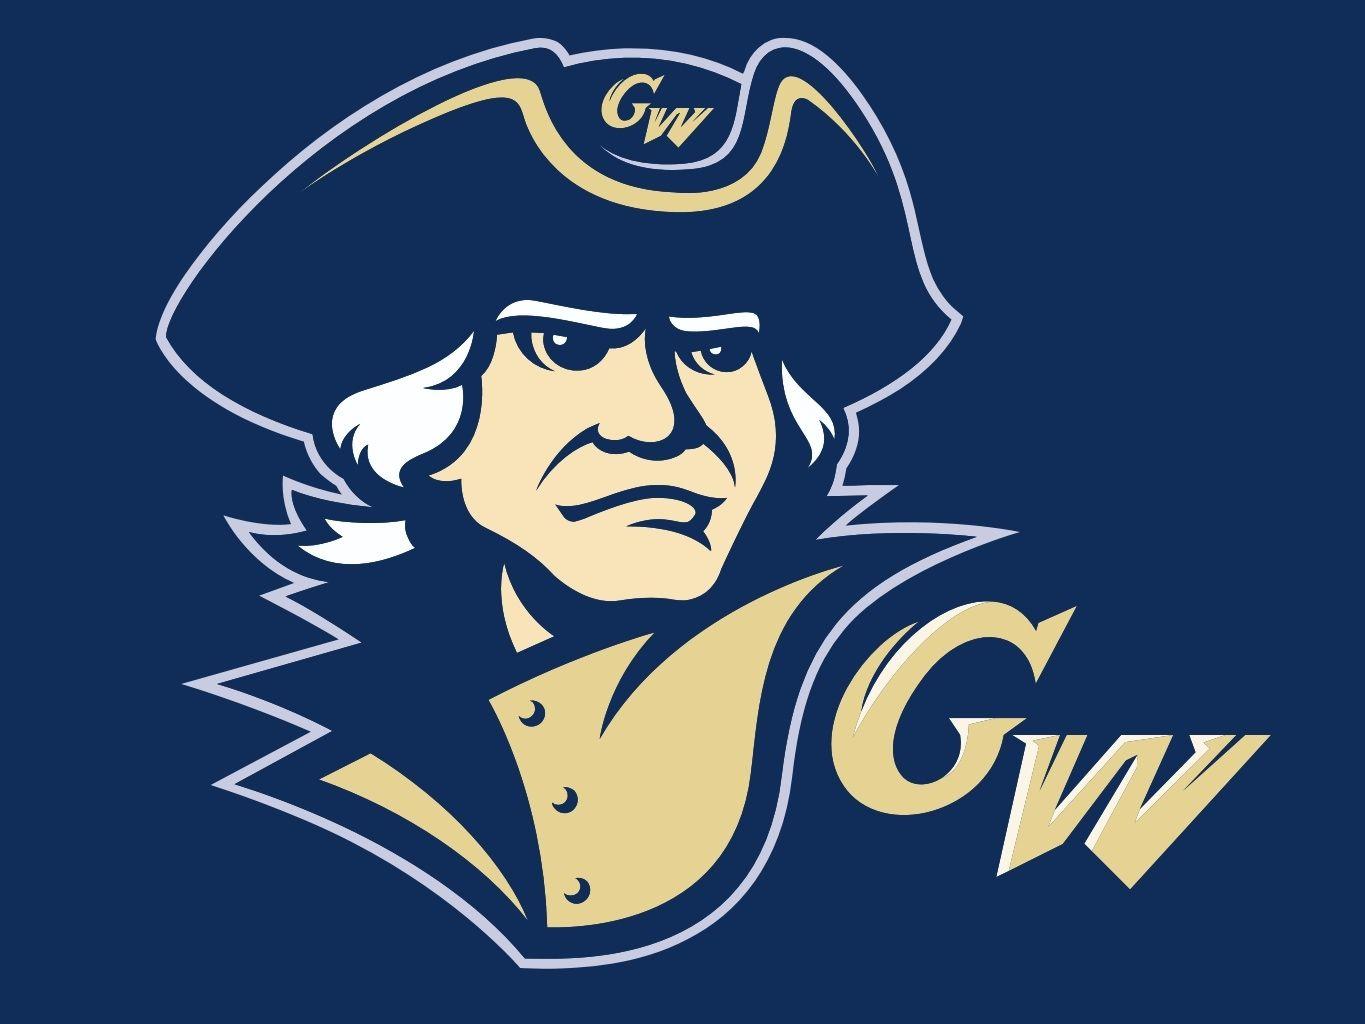 George Washington University Logo - The George Washington University - because one time I got accepted